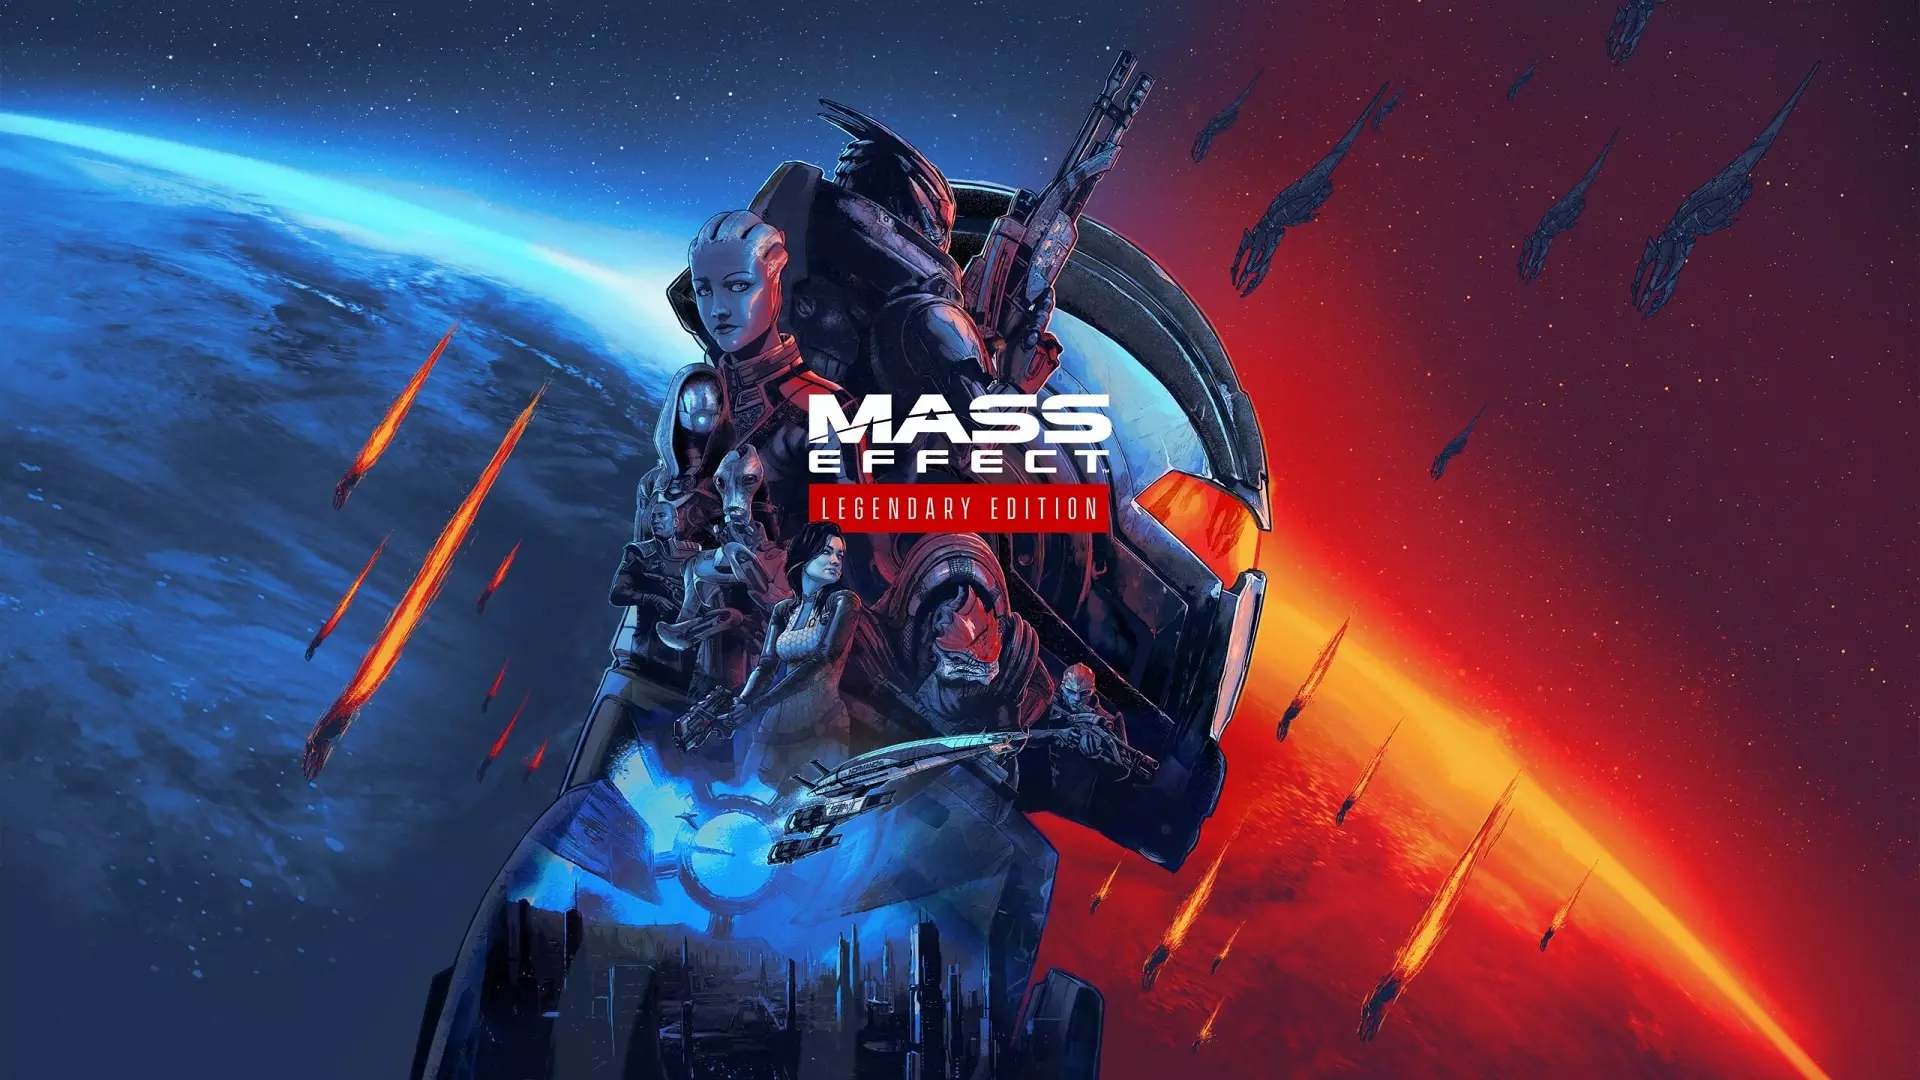 امکان طراحی تصویر روی جلد ریمستر بازی سه گانه Mass Effect توسط بازیکنان